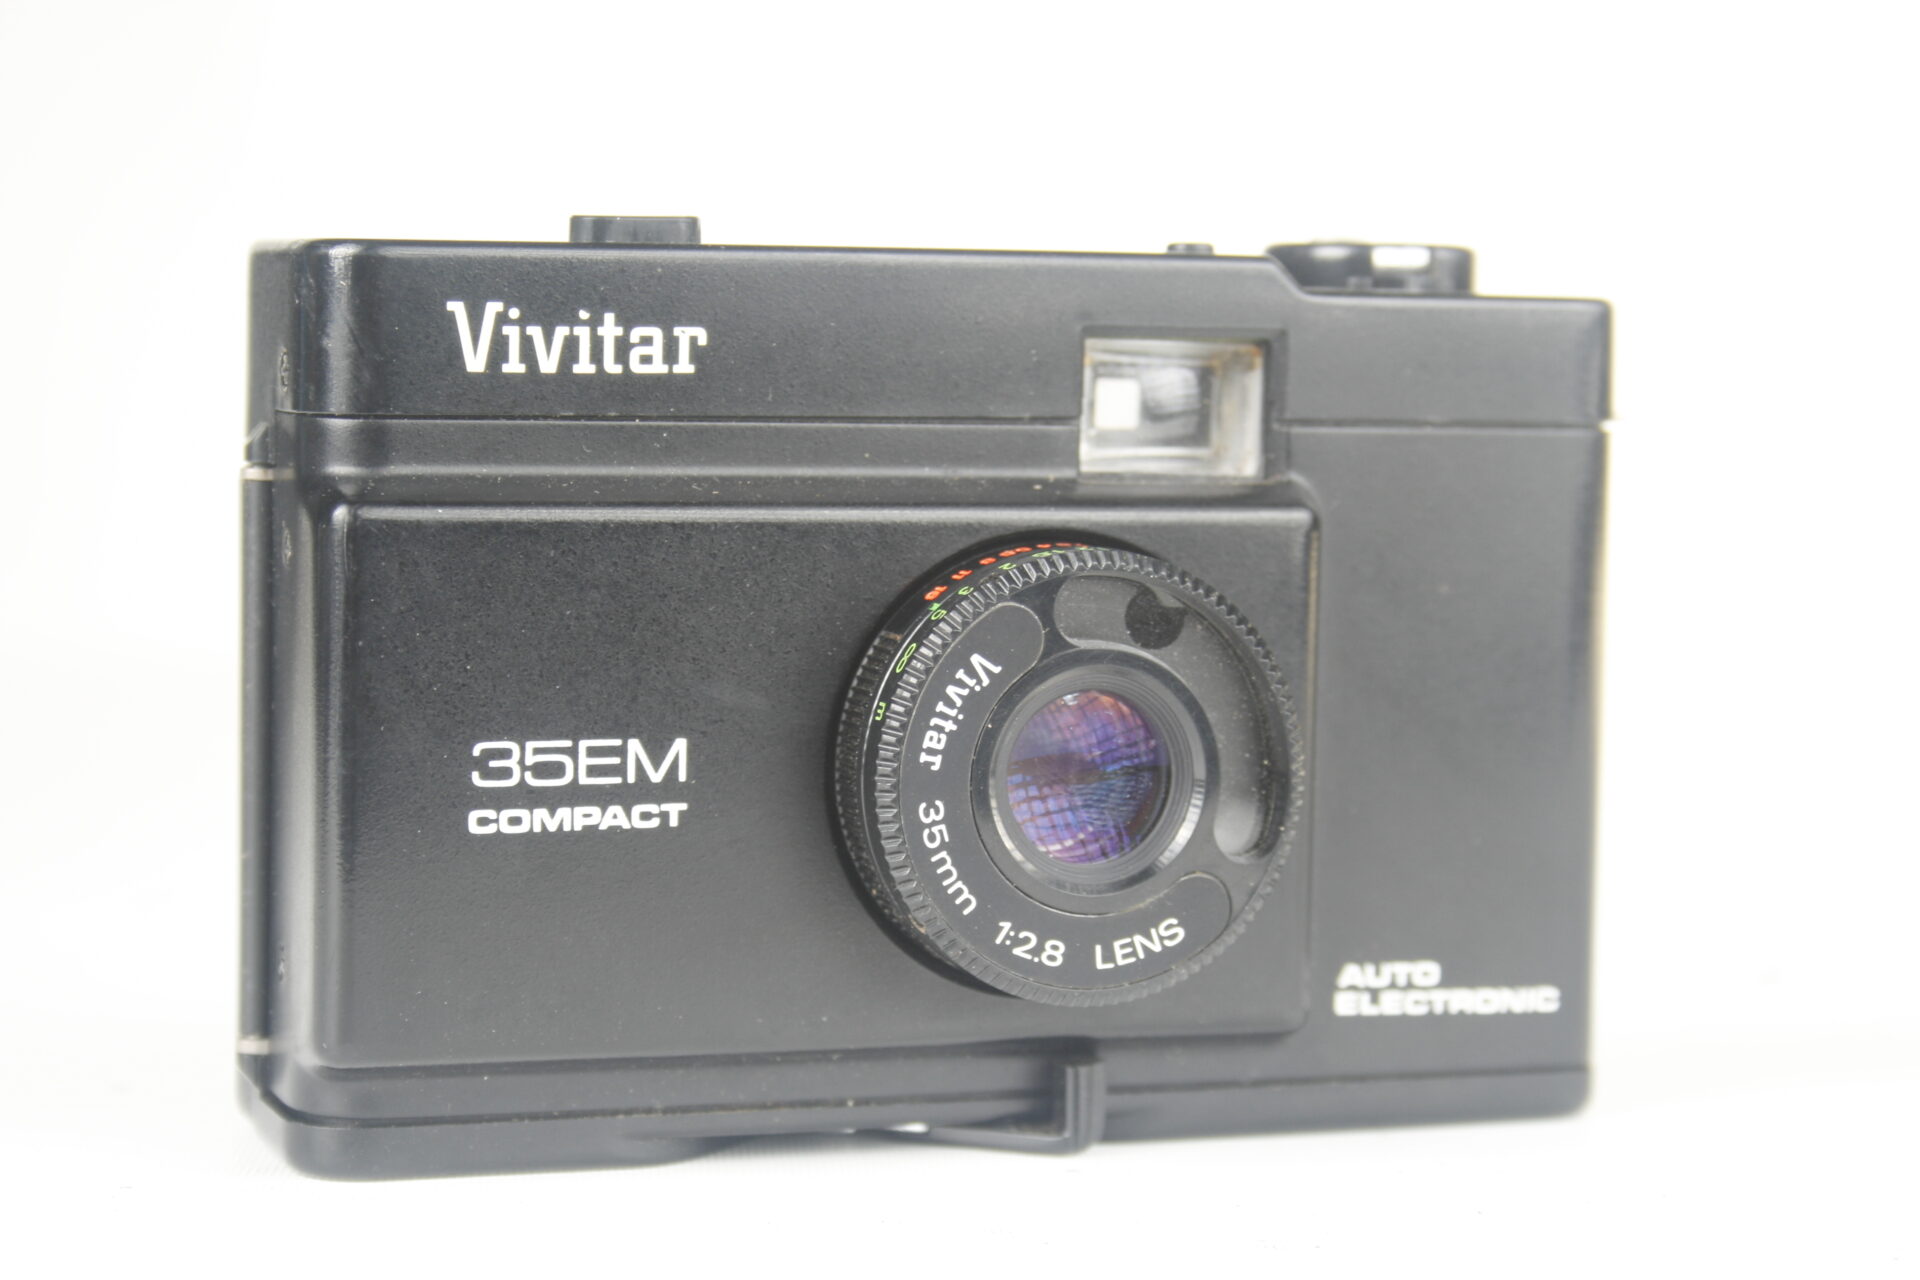 Vivitar 35EM compact camera. 35mm film. 1980. USA.